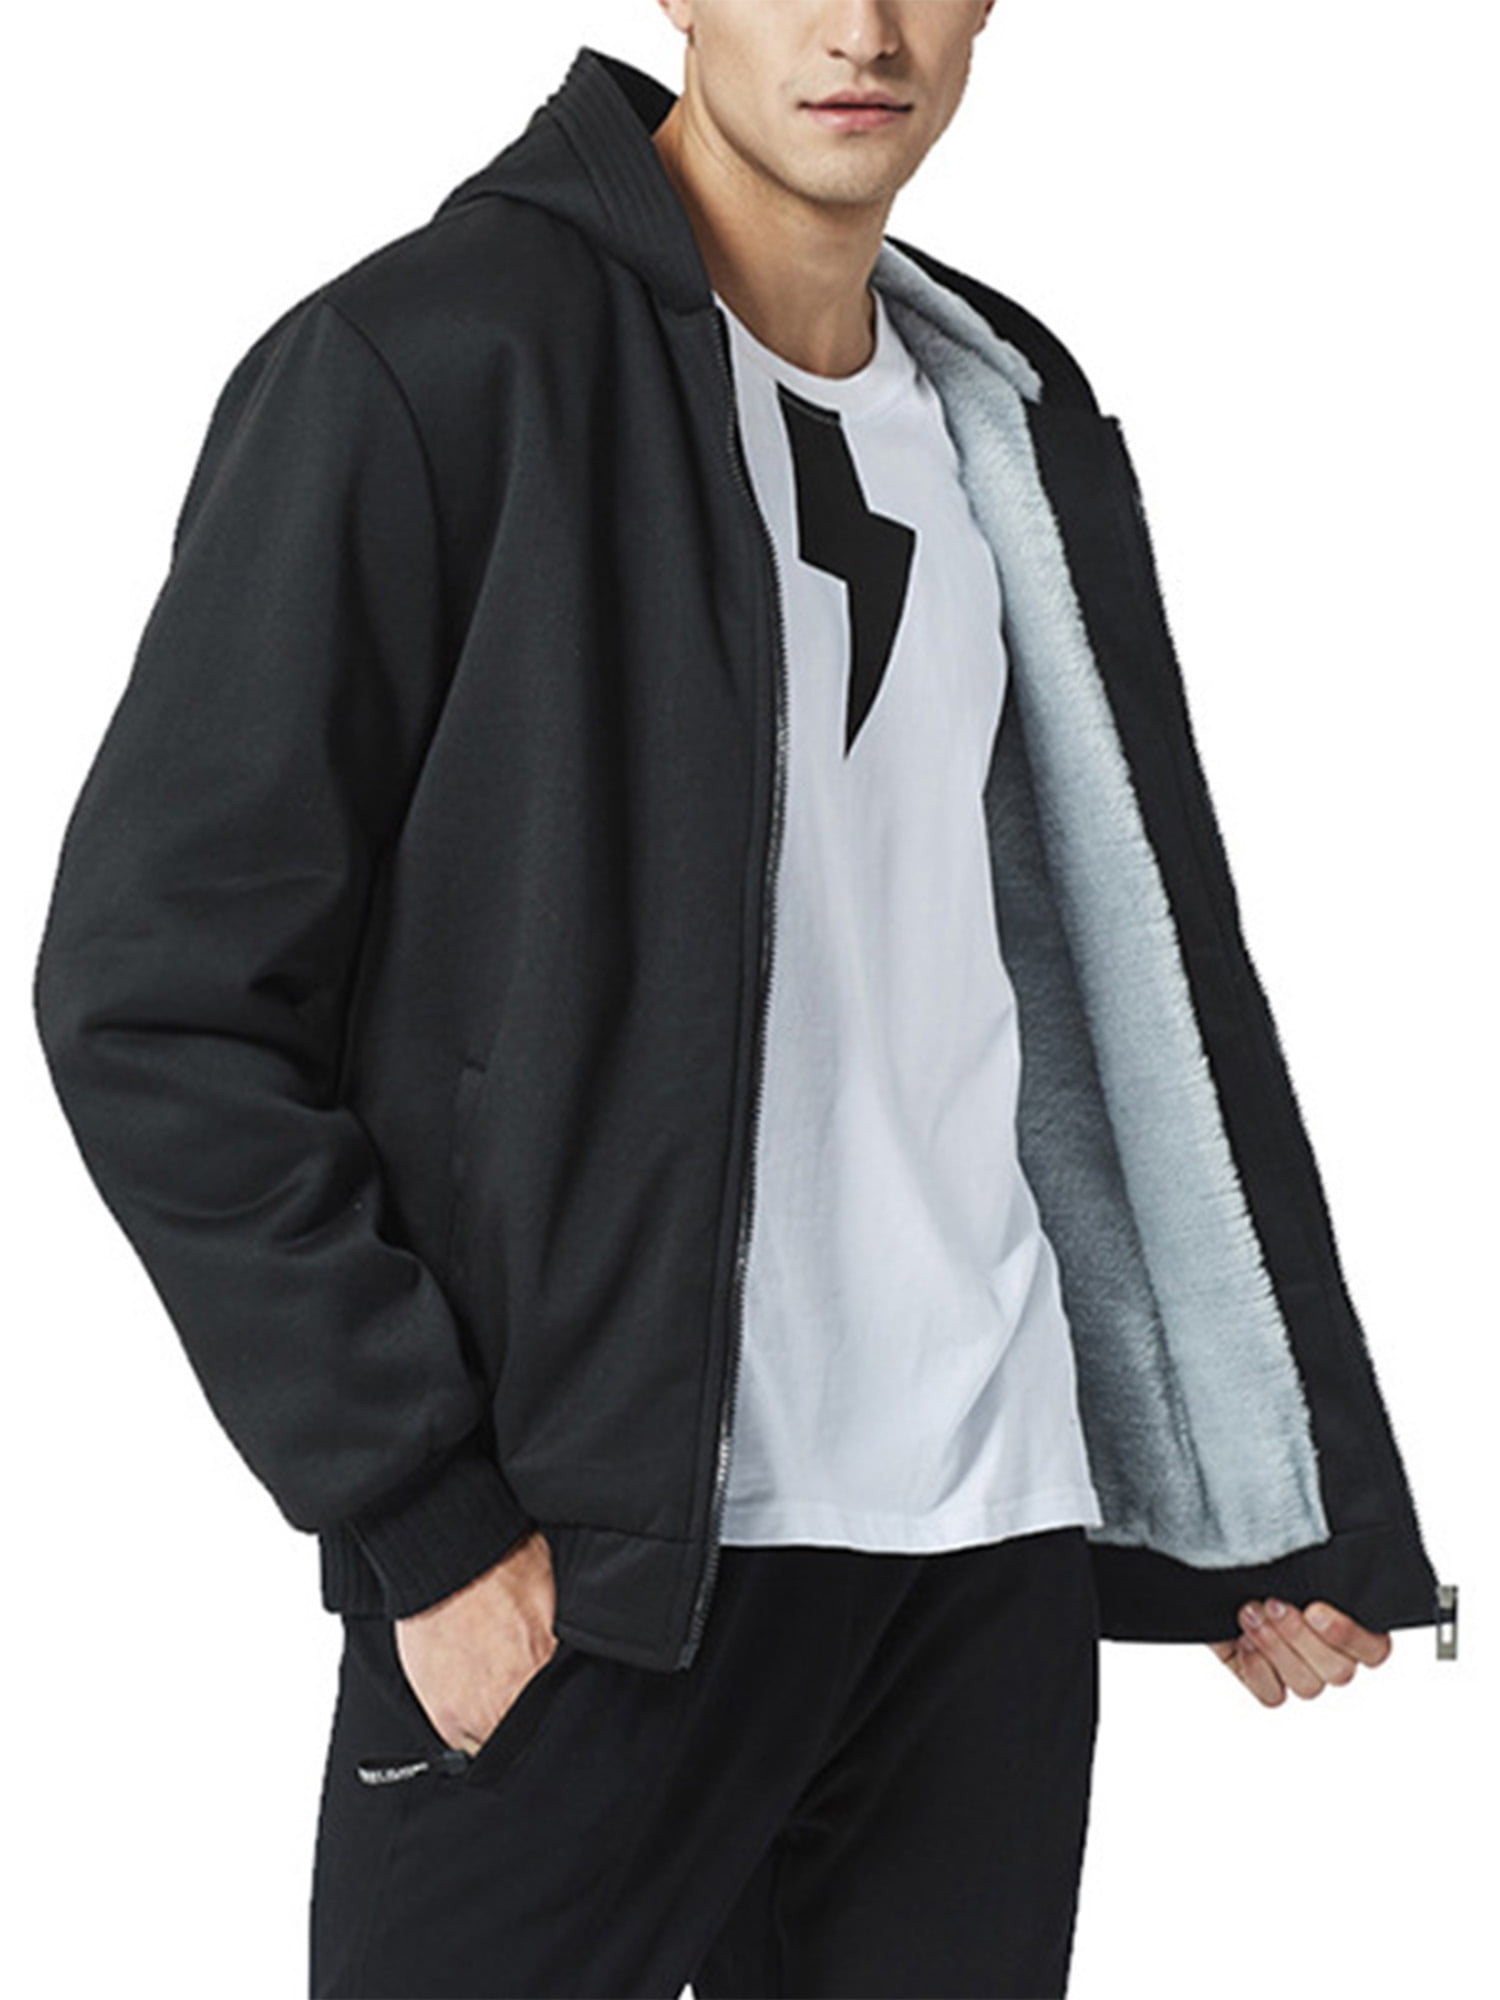 SELX Men Solid Color Coat Outerwear Full-Zip Hooded Military Fleece Sweatshirt 